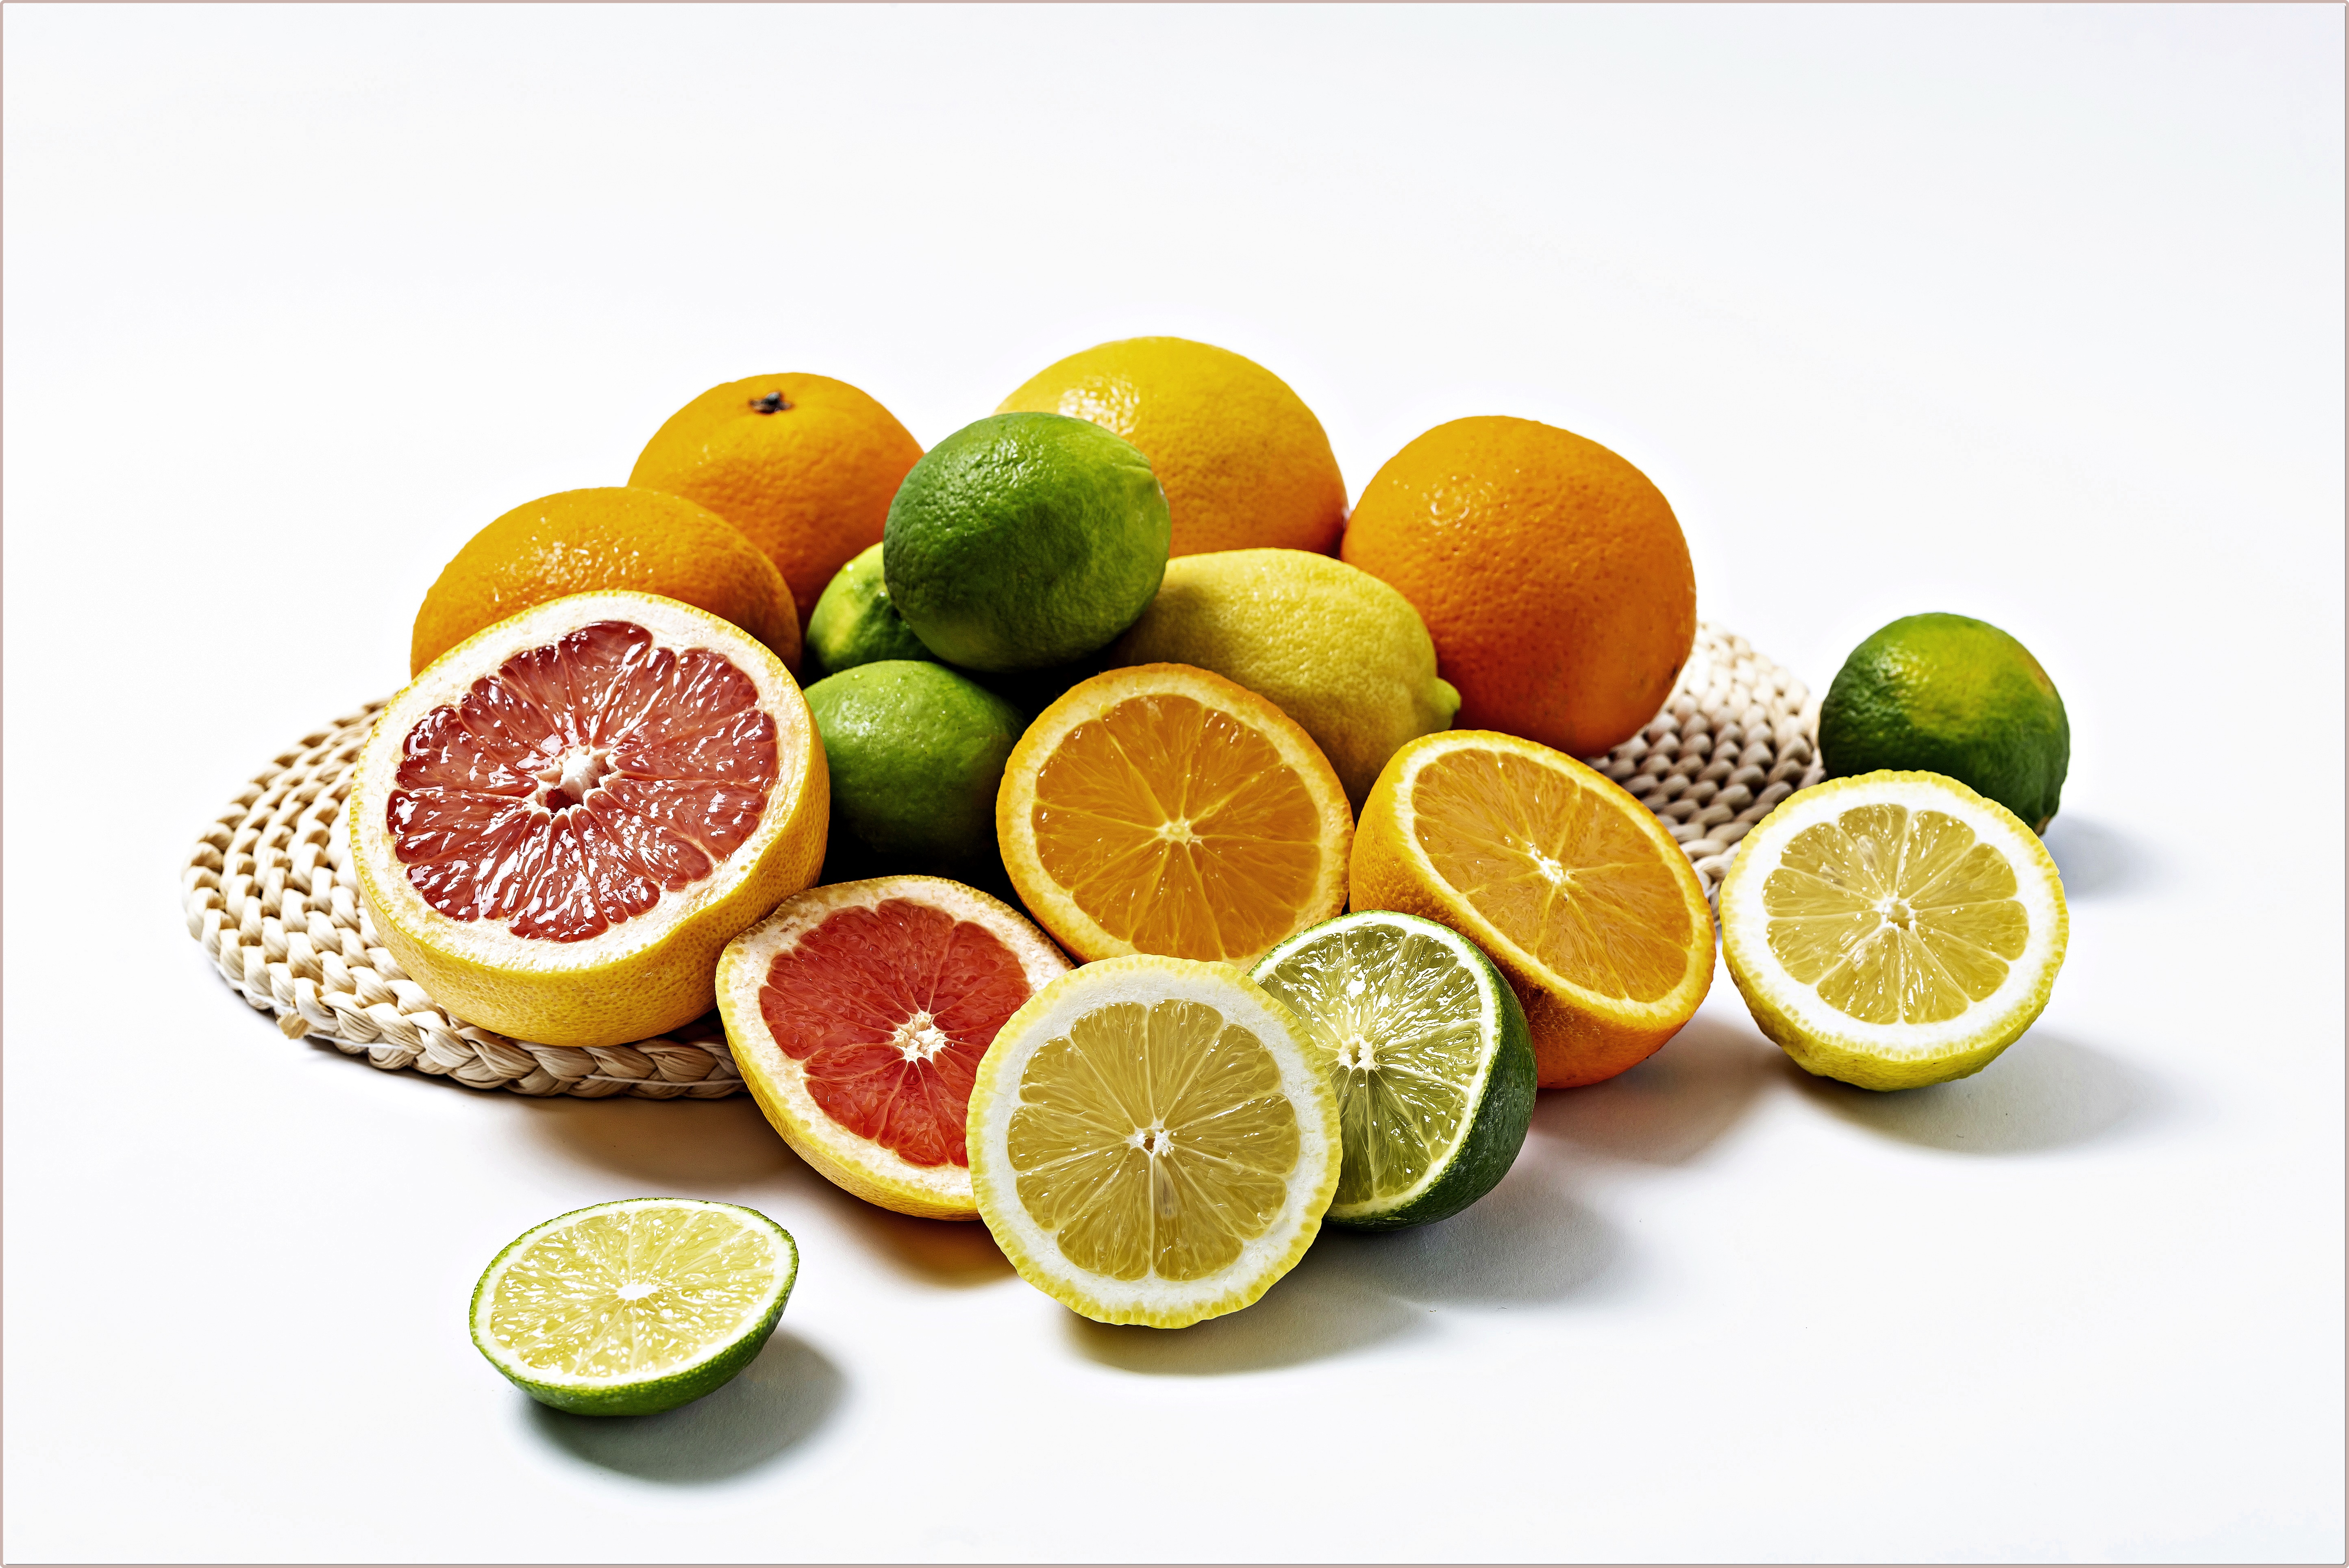 비타민C 듬뿍 들어가 있는 음식 종류 살펴보기